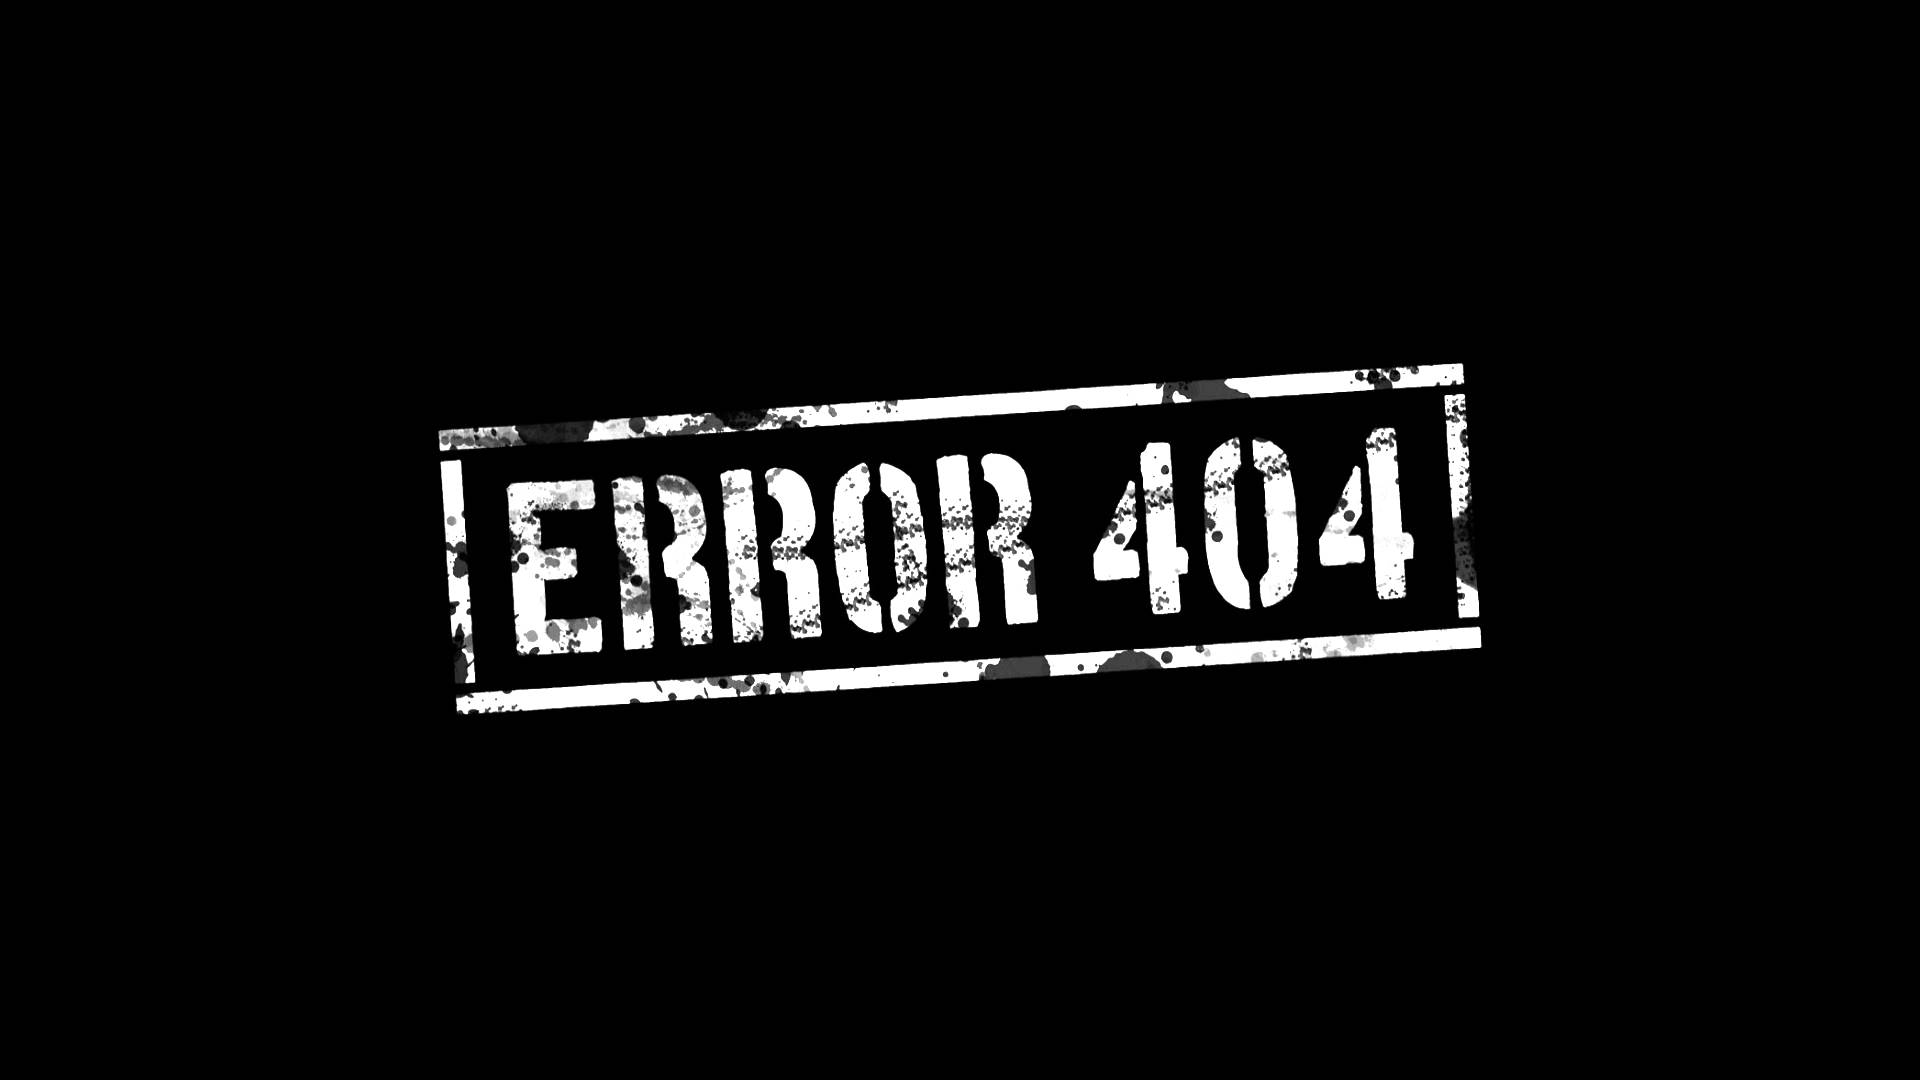 404 - Not found